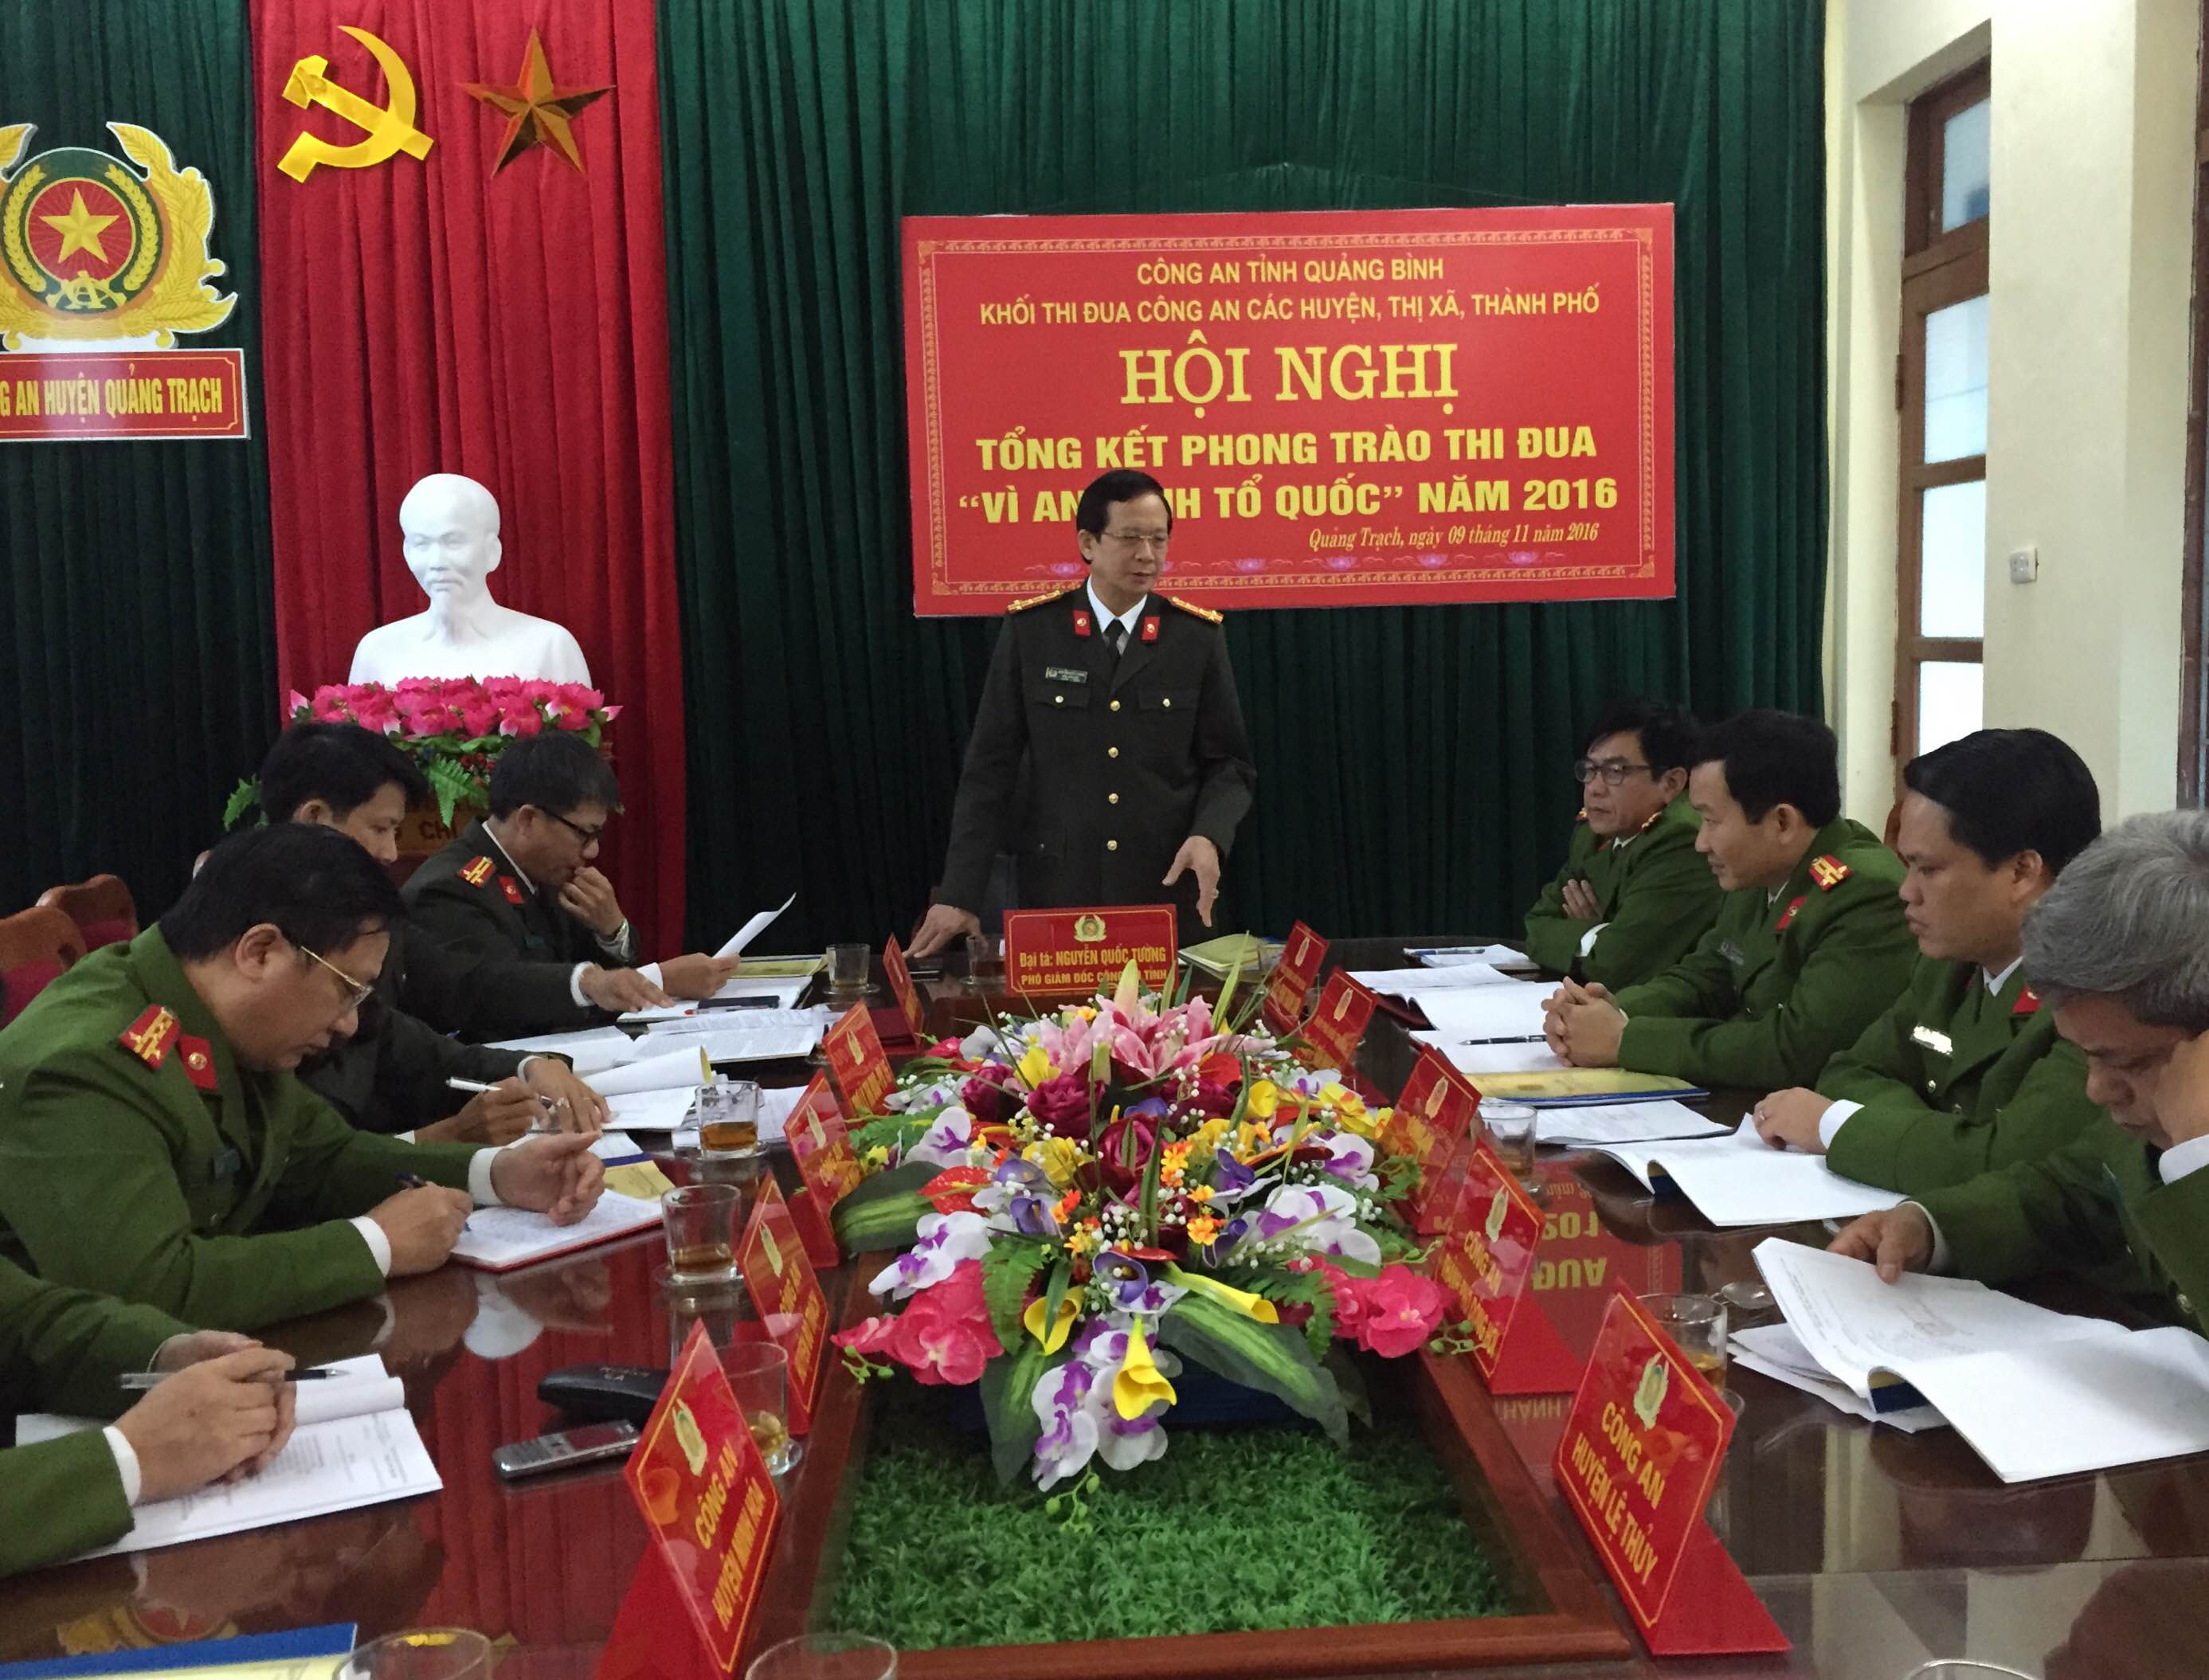 Đại tá Nguyễn Quốc Tường- Phó giám đốc Công an tỉnh yêu cầu Công an các huyện, thị xã thành phố nâng cao sức chiến đấu và năng lực công tác.